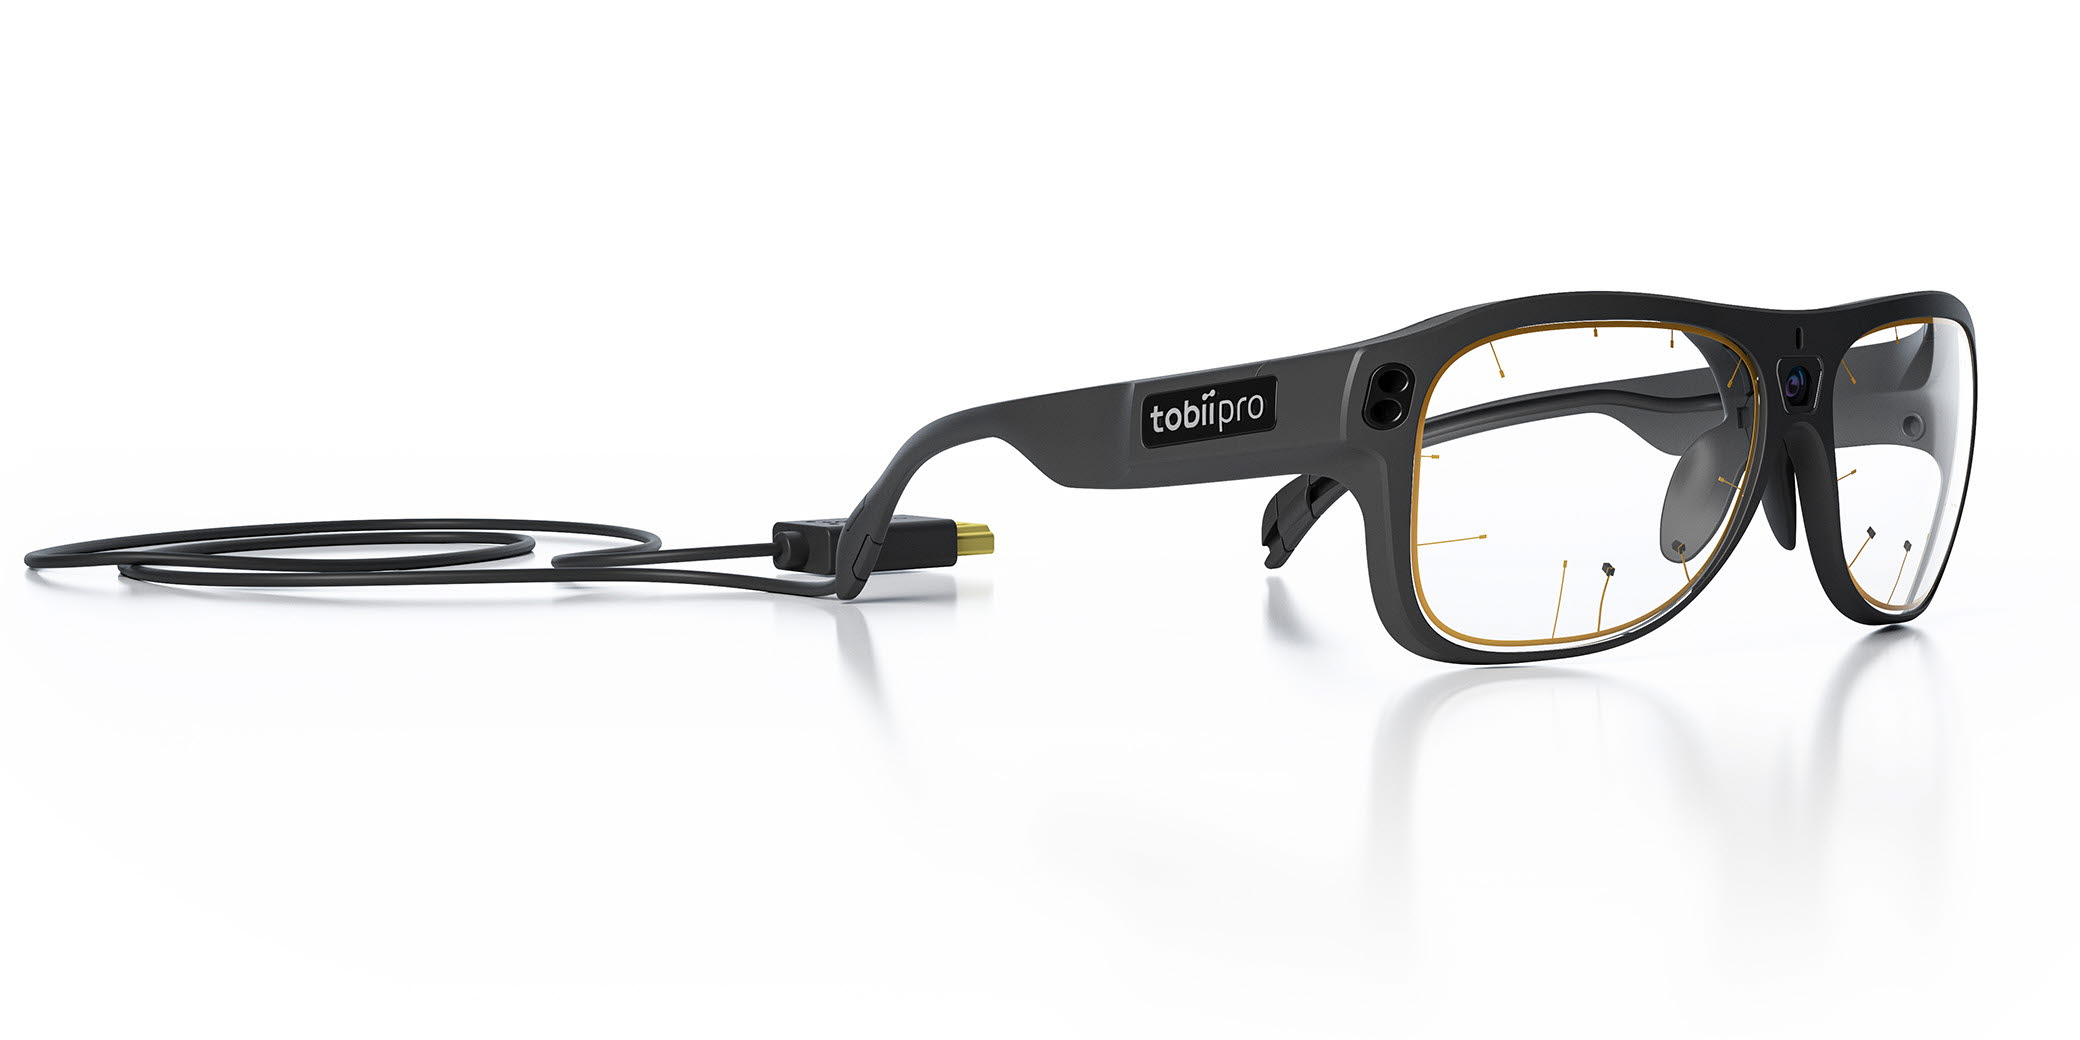 Tobii Pro Glasses 3 eye tracker. Tobii Pro Glasses 3 eye tracker